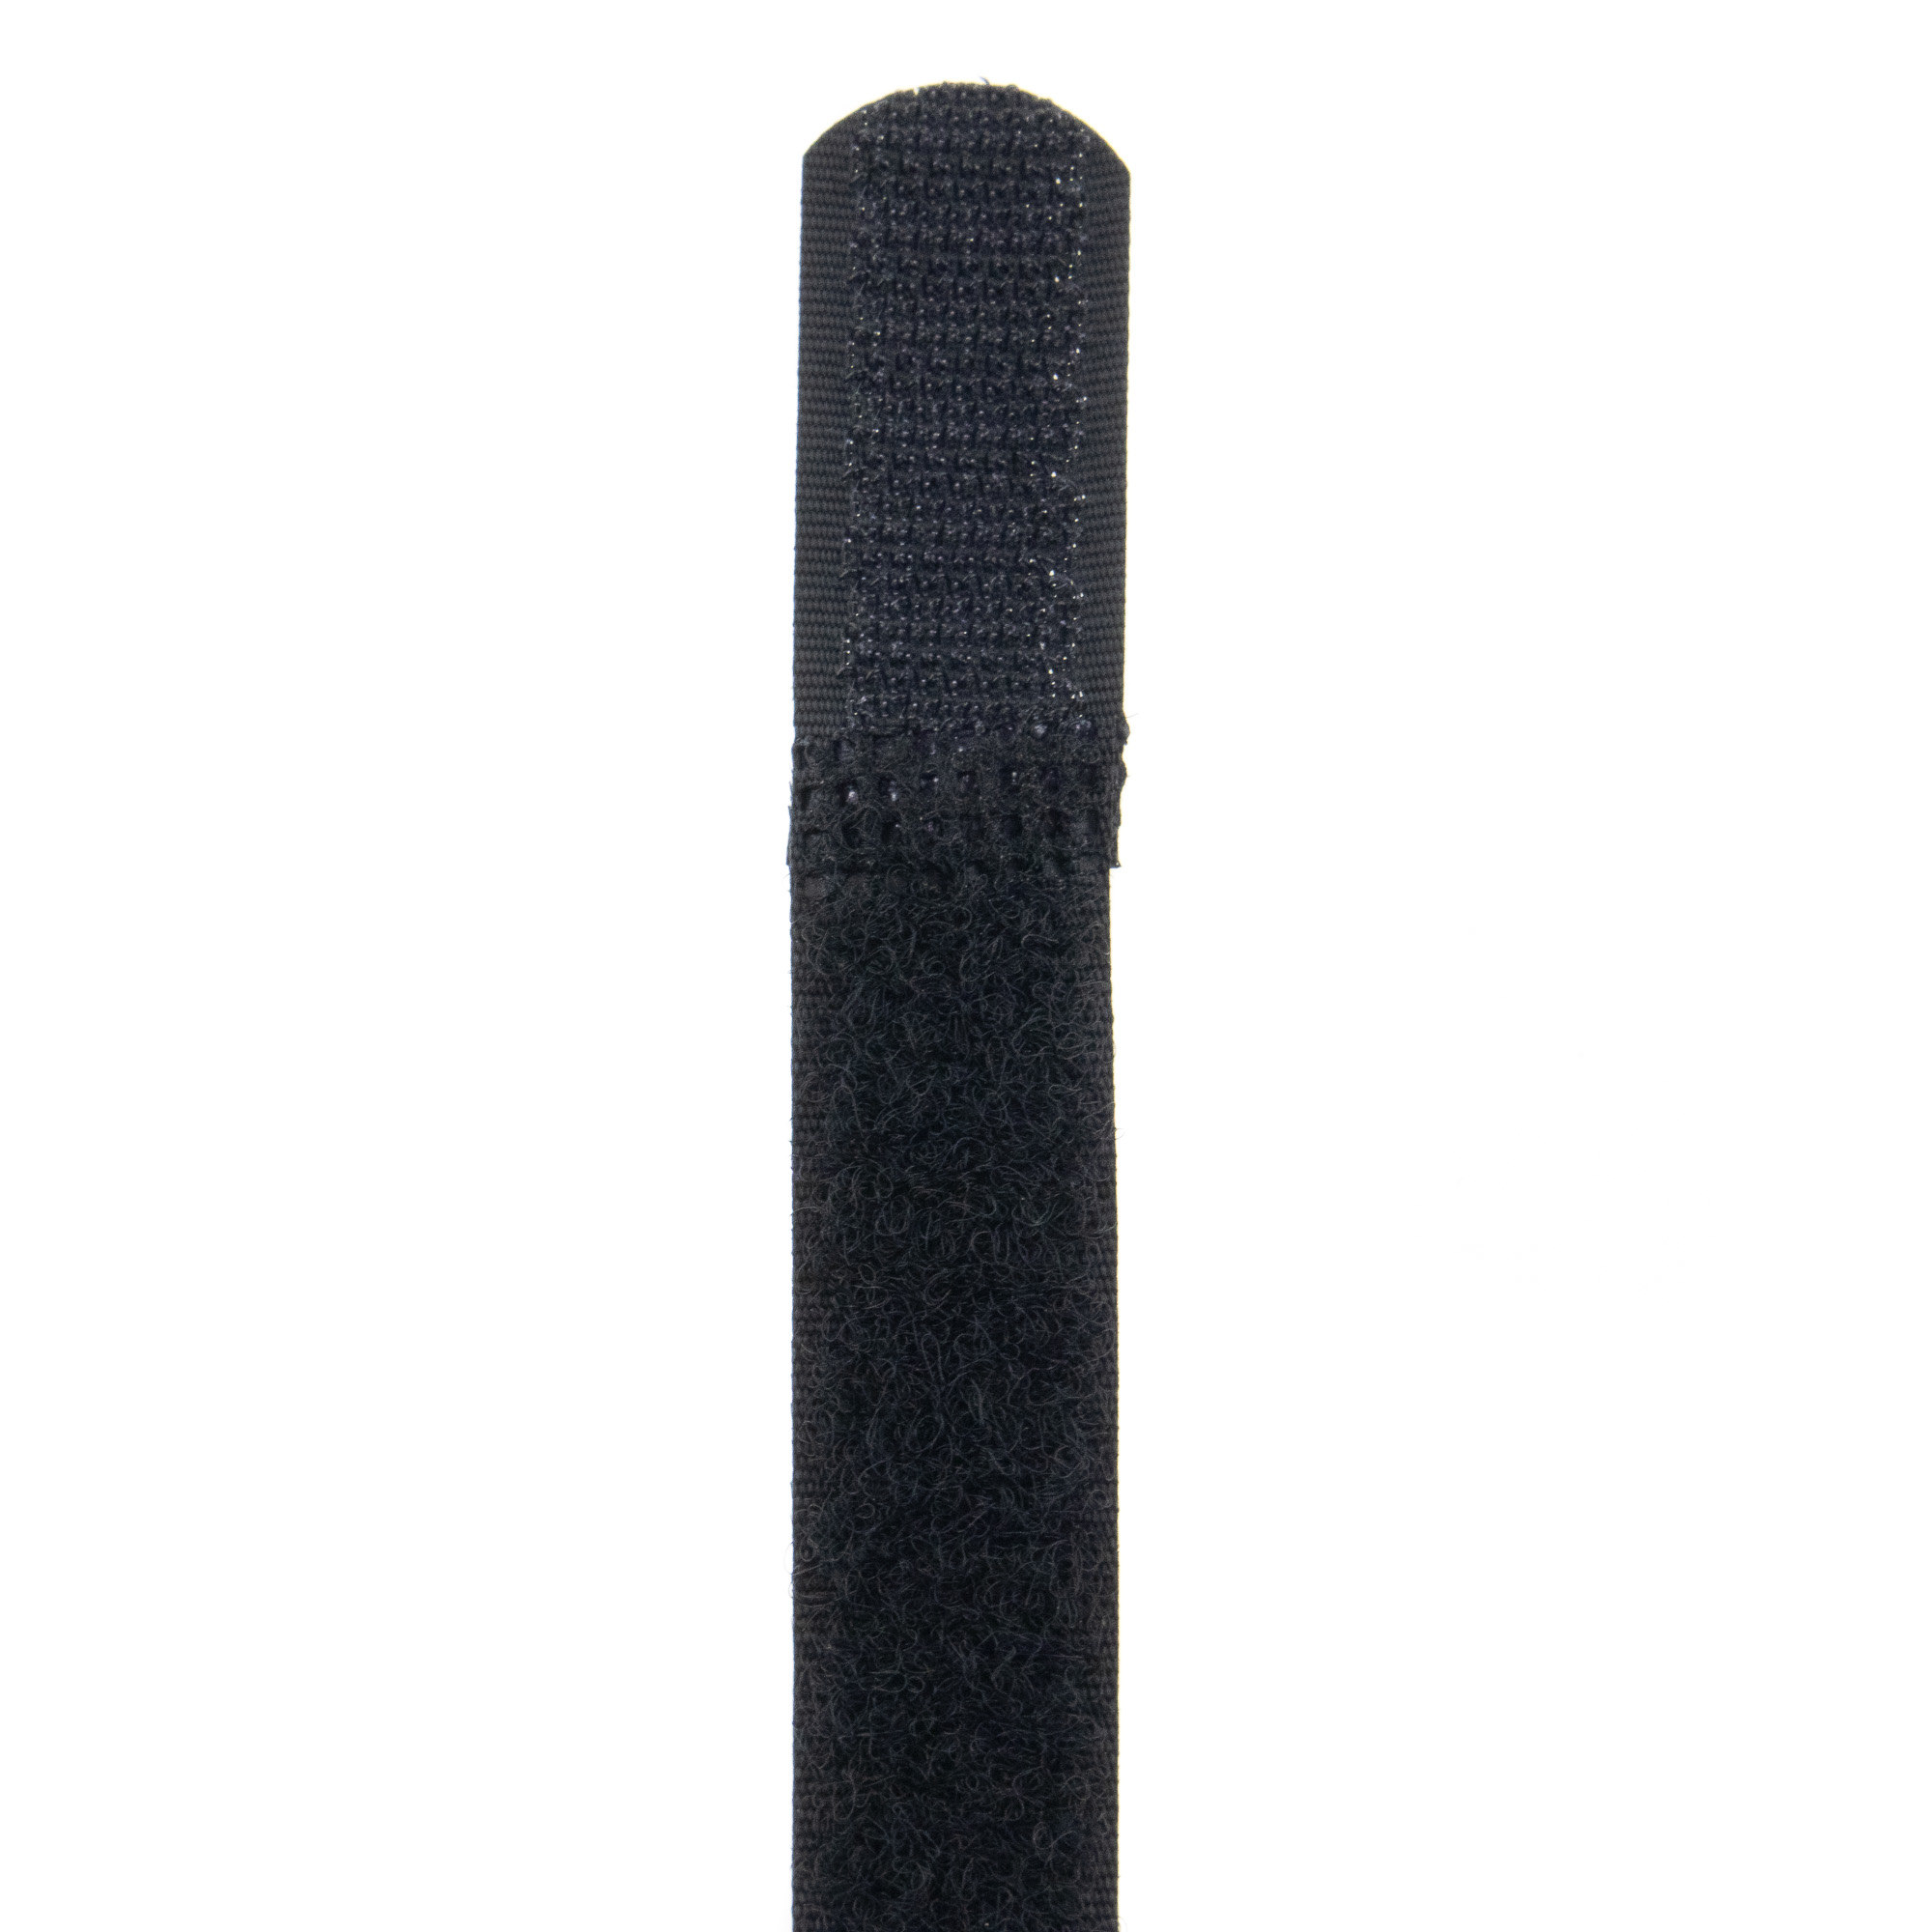 Klettbinder 150x16, schwarz, 10Stk.